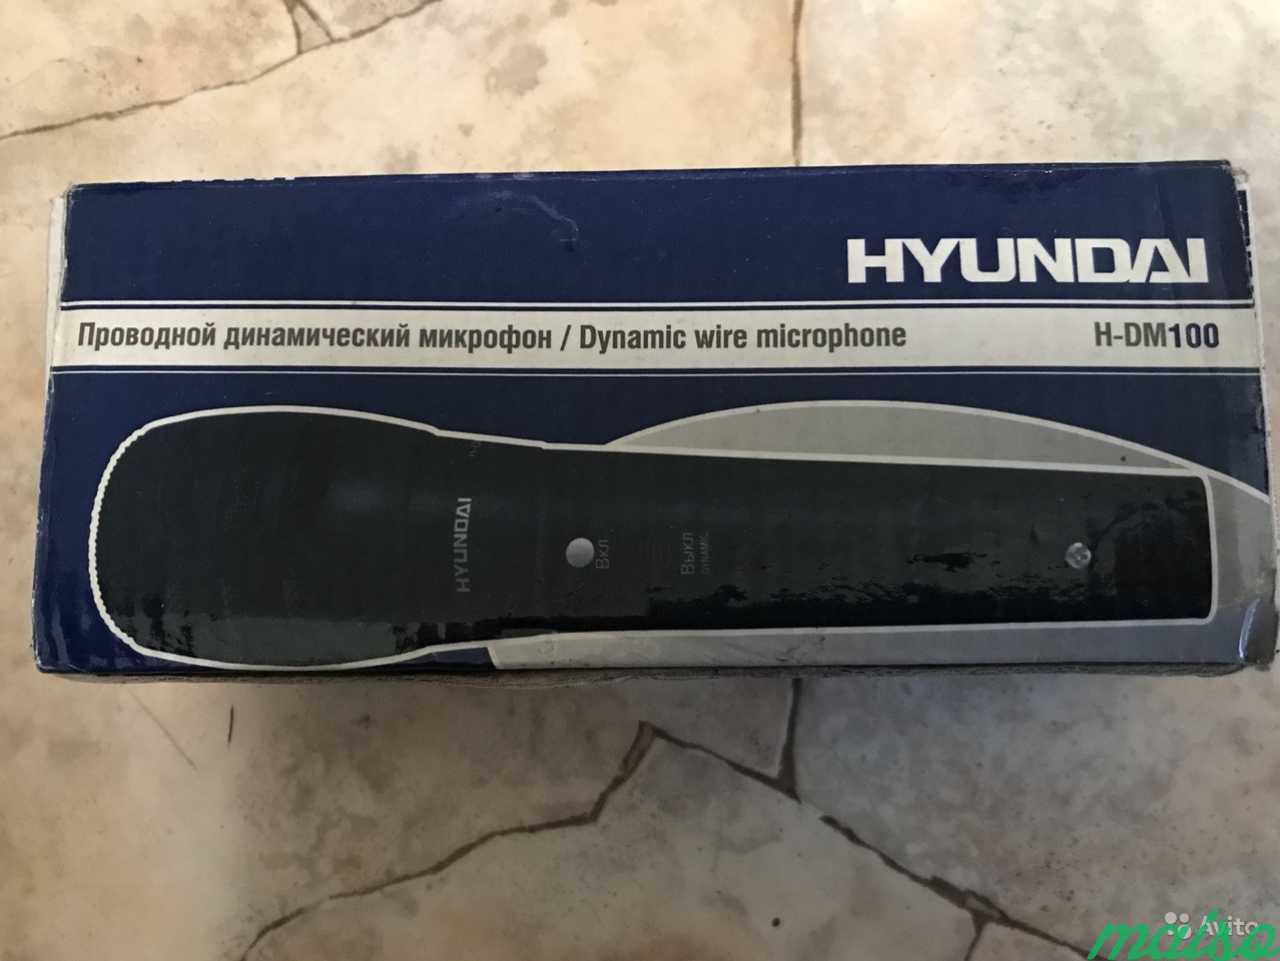 Проводной динамический микрофон Hyundai H-DM100 но в Санкт-Петербурге. Фото 1